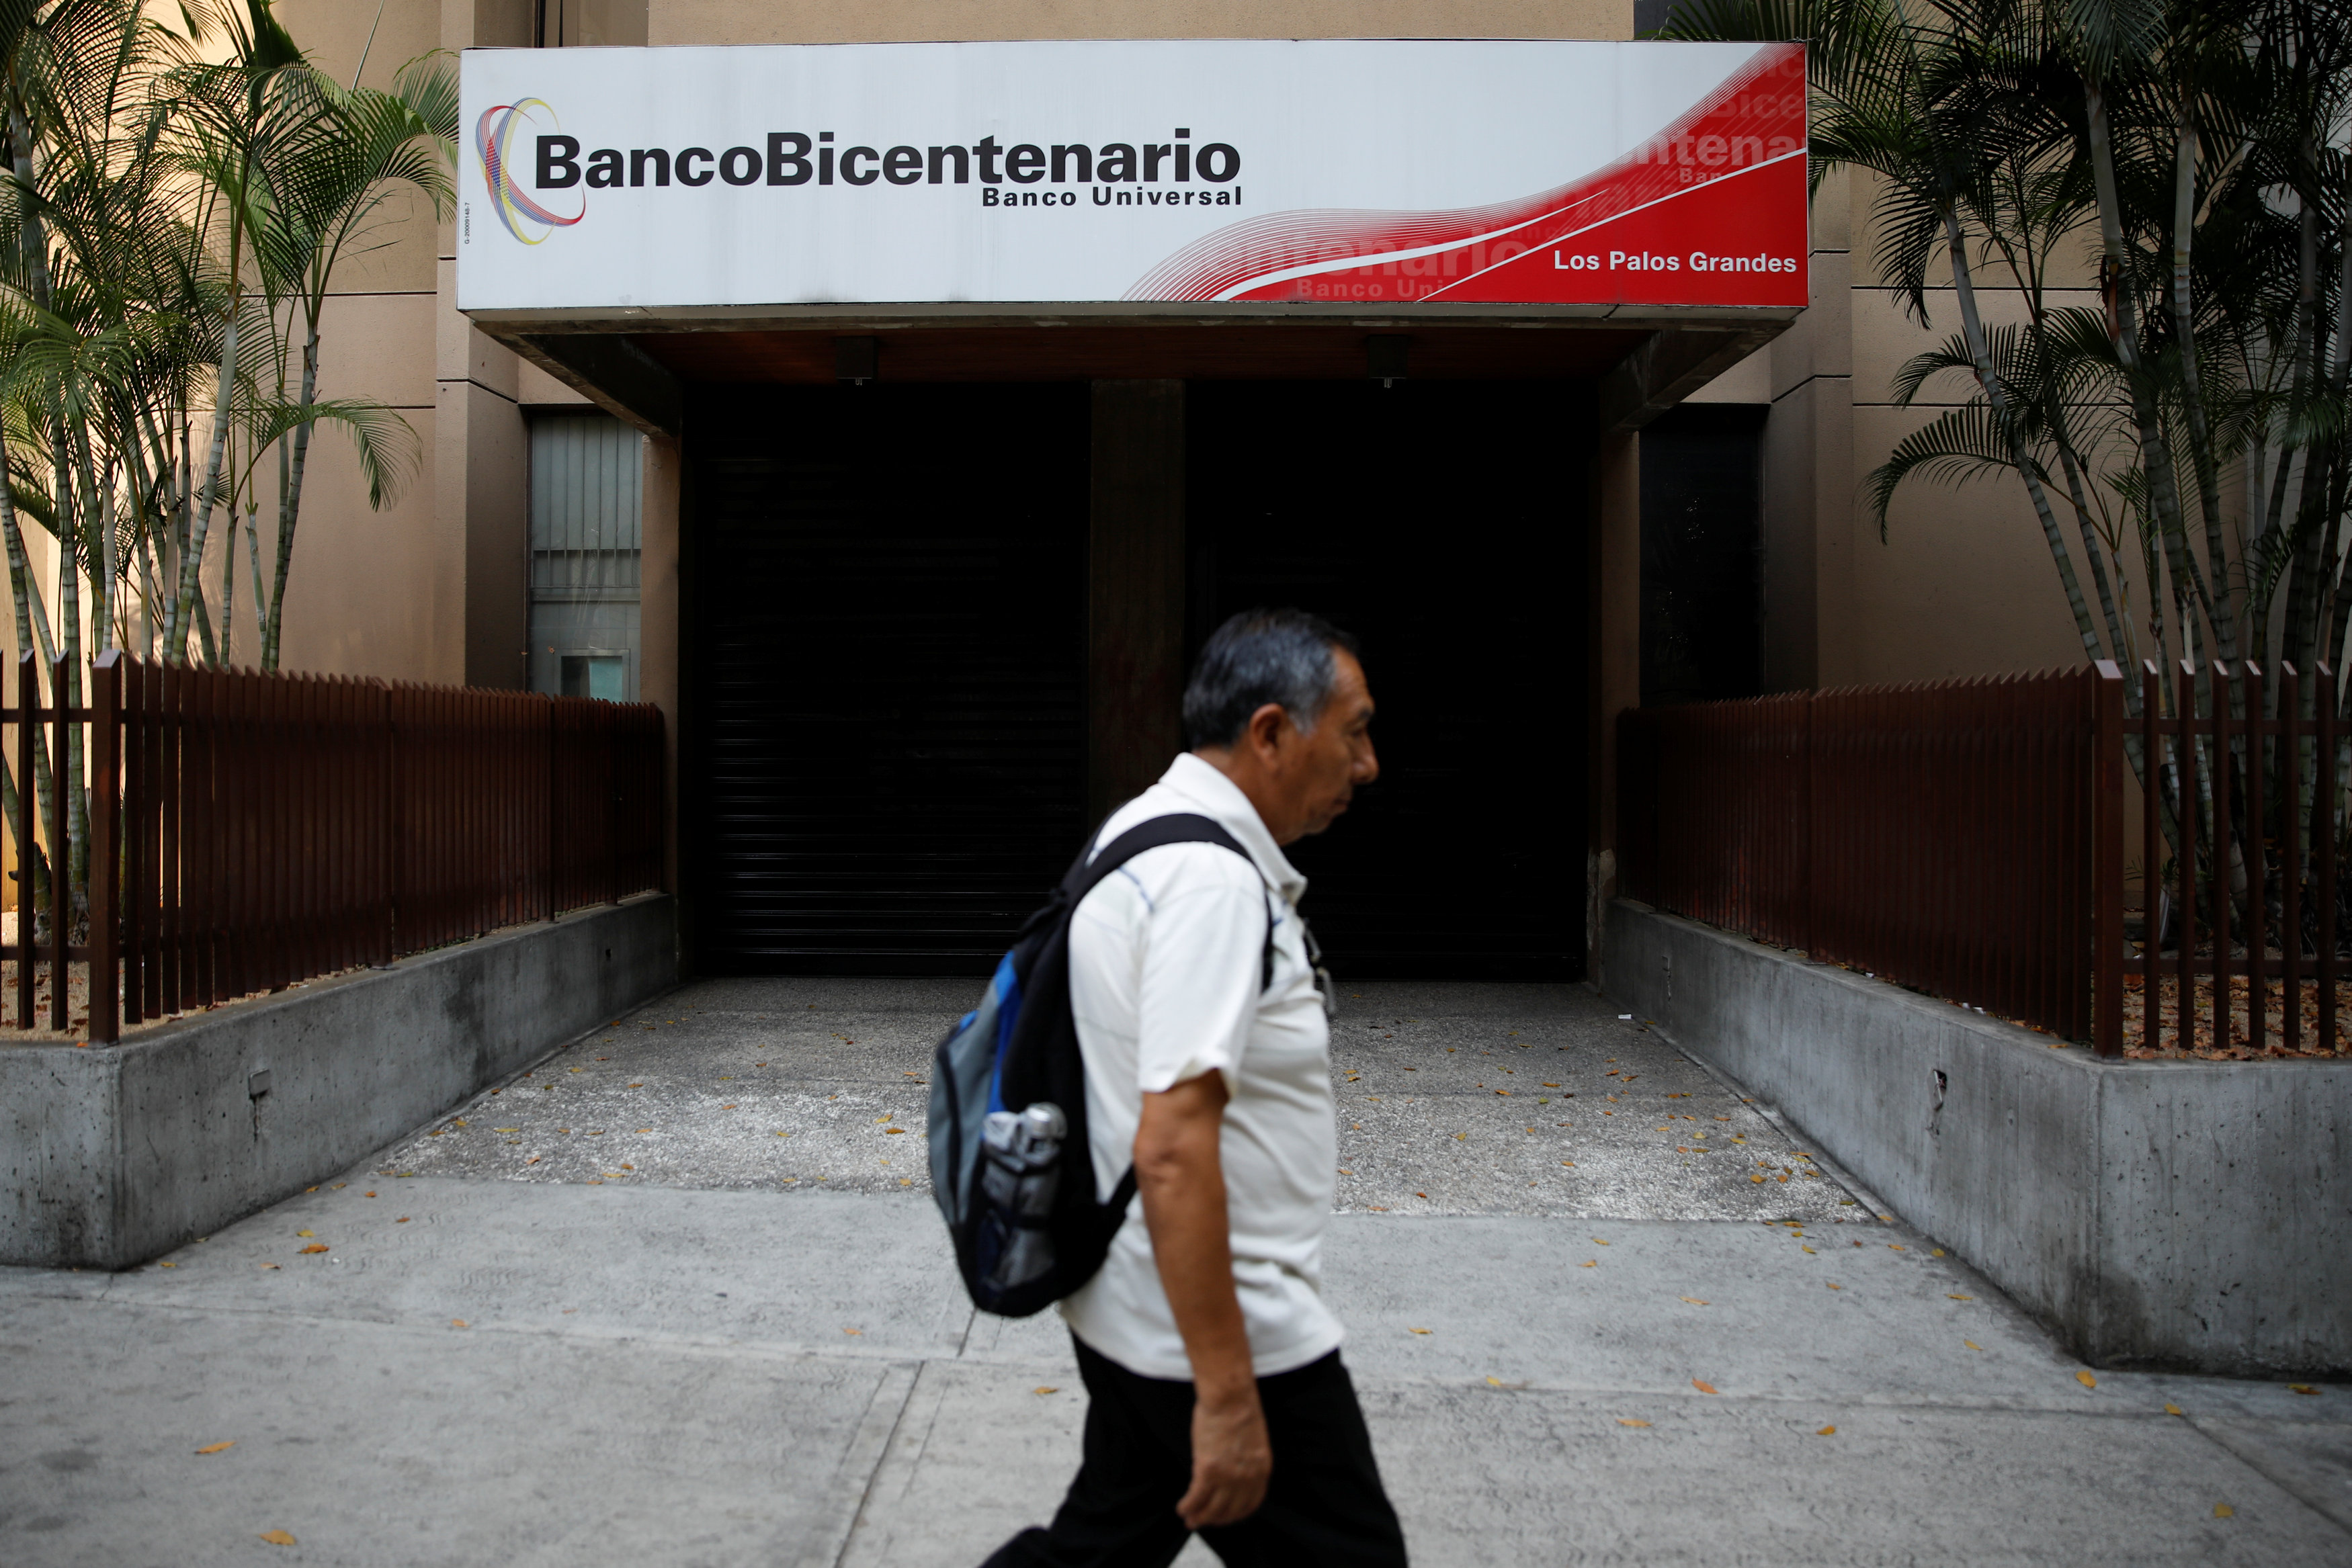 Banco Bicentenario ultima detalles para las cuentas de custodia de divisas